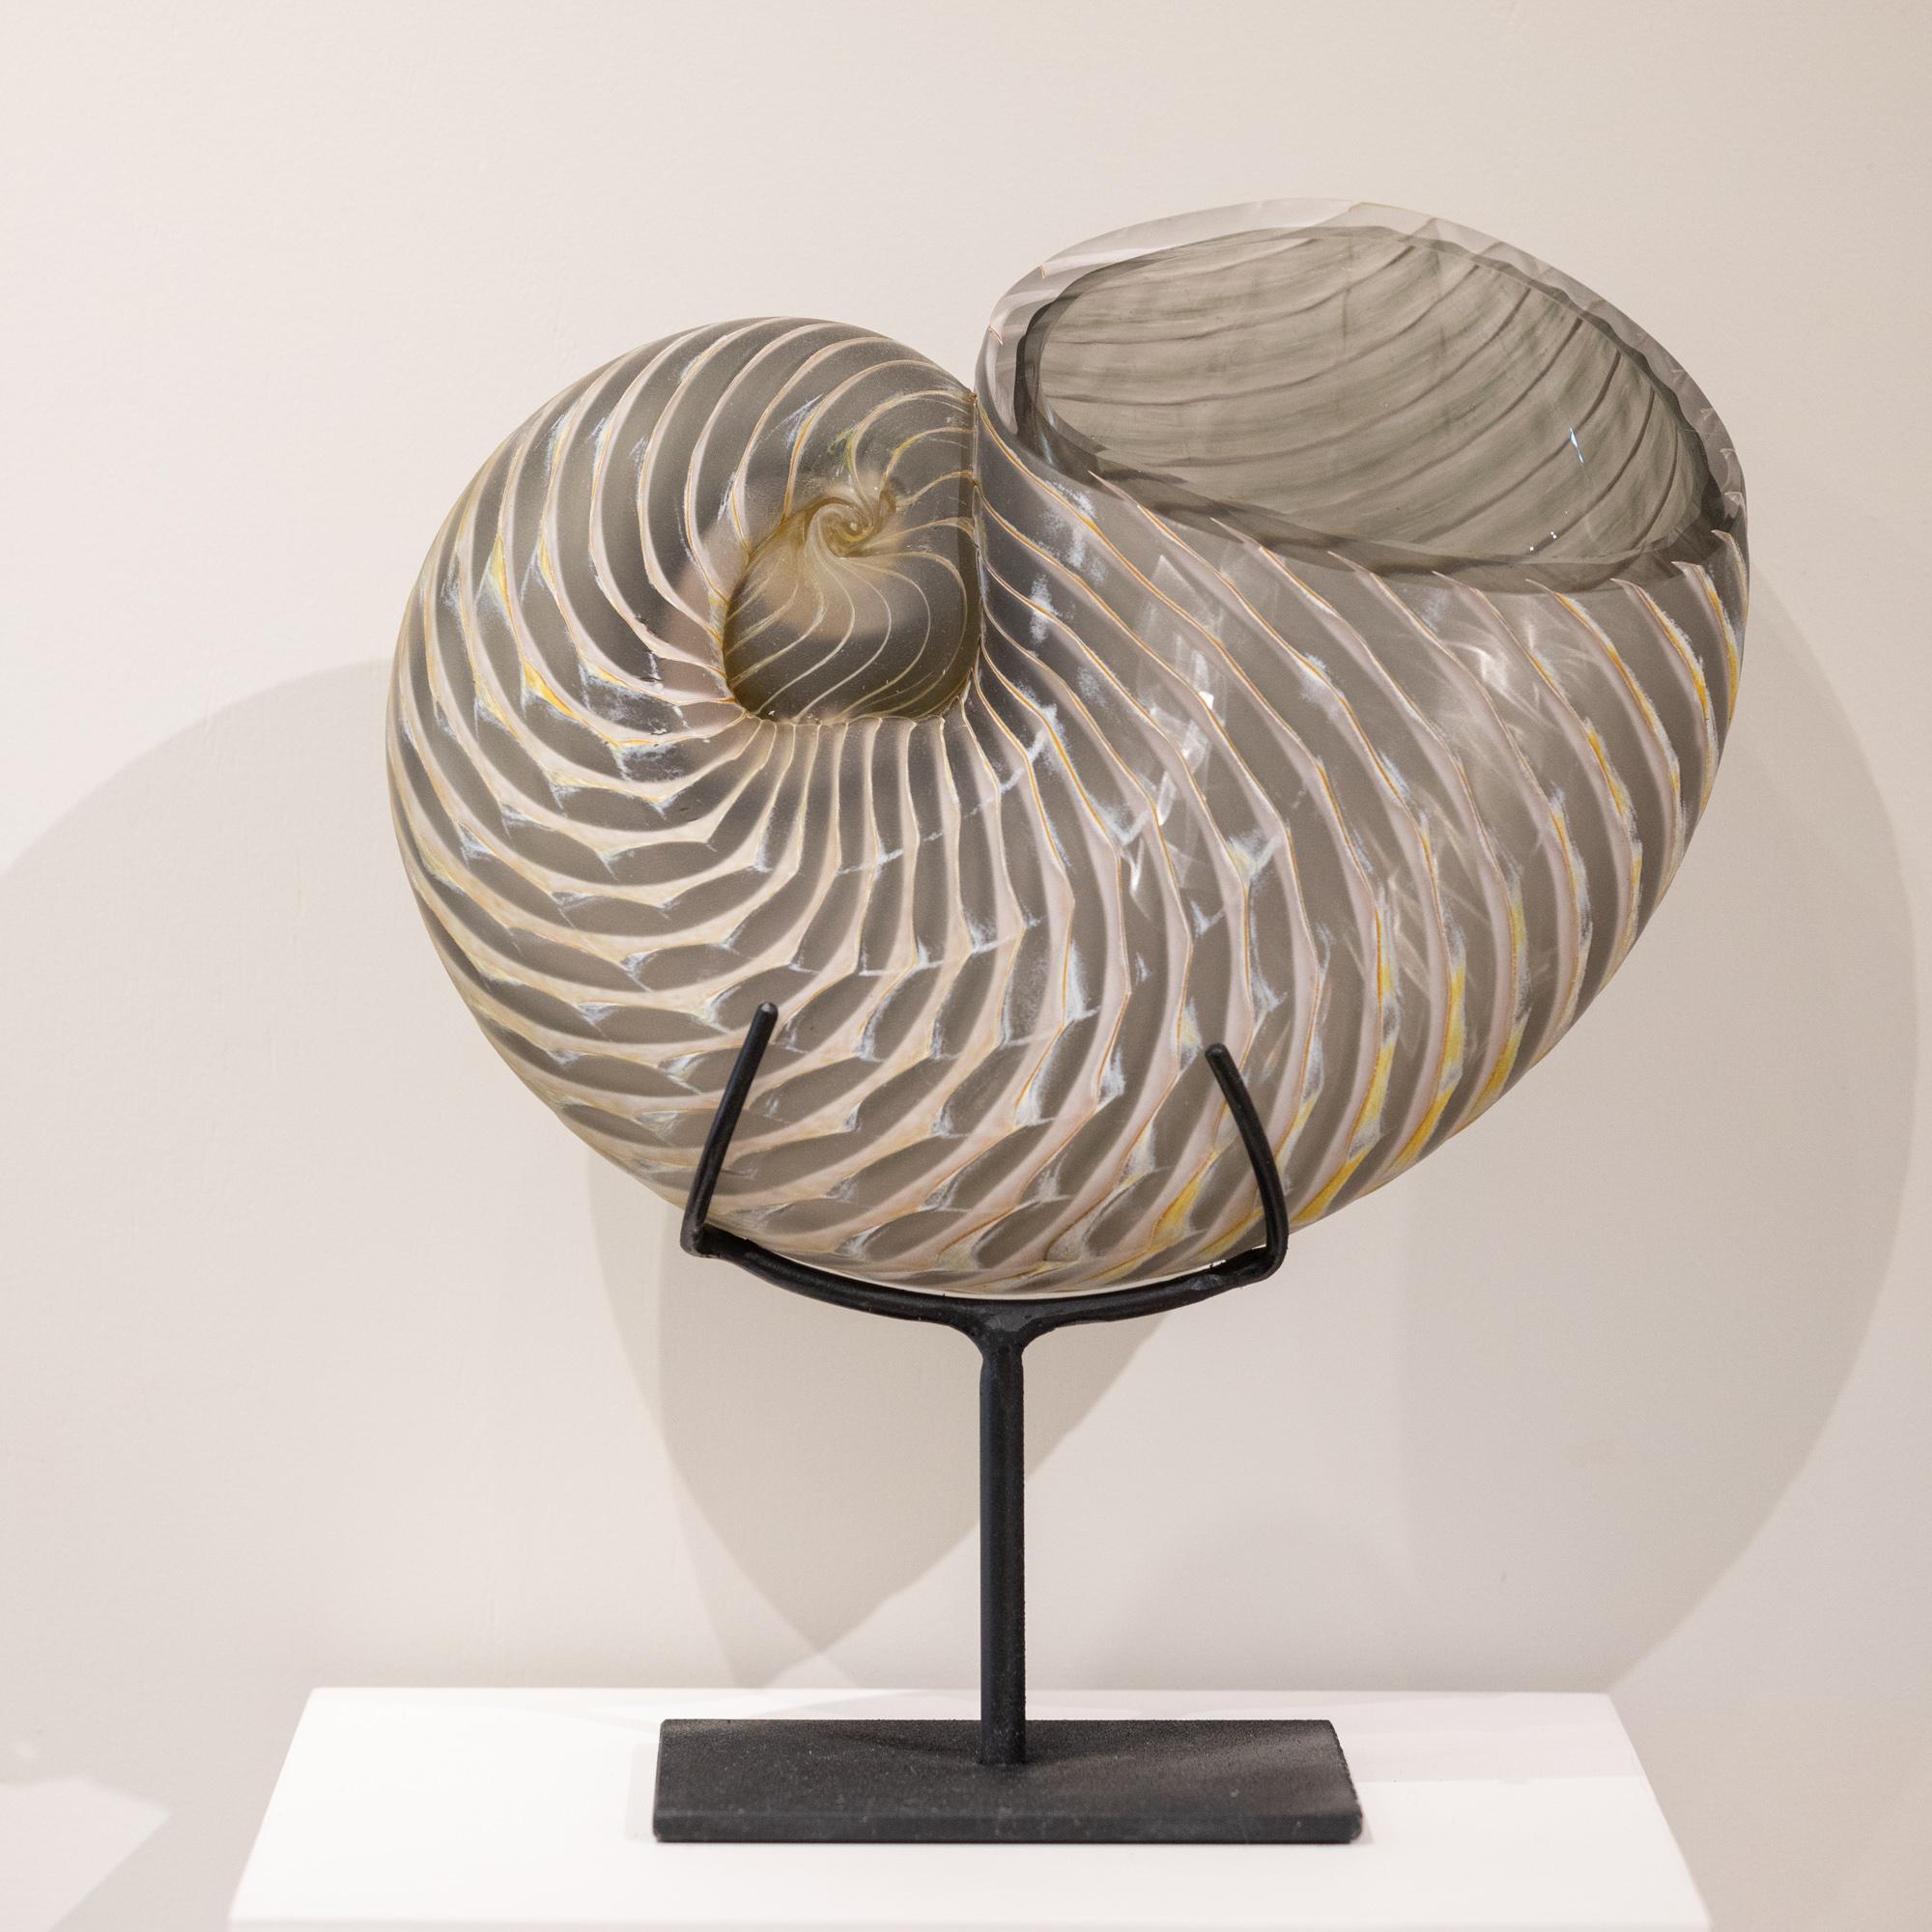 « Nautilus gris fumé », une sculpture en verre de coquillage de Nautilus élégante et complexe